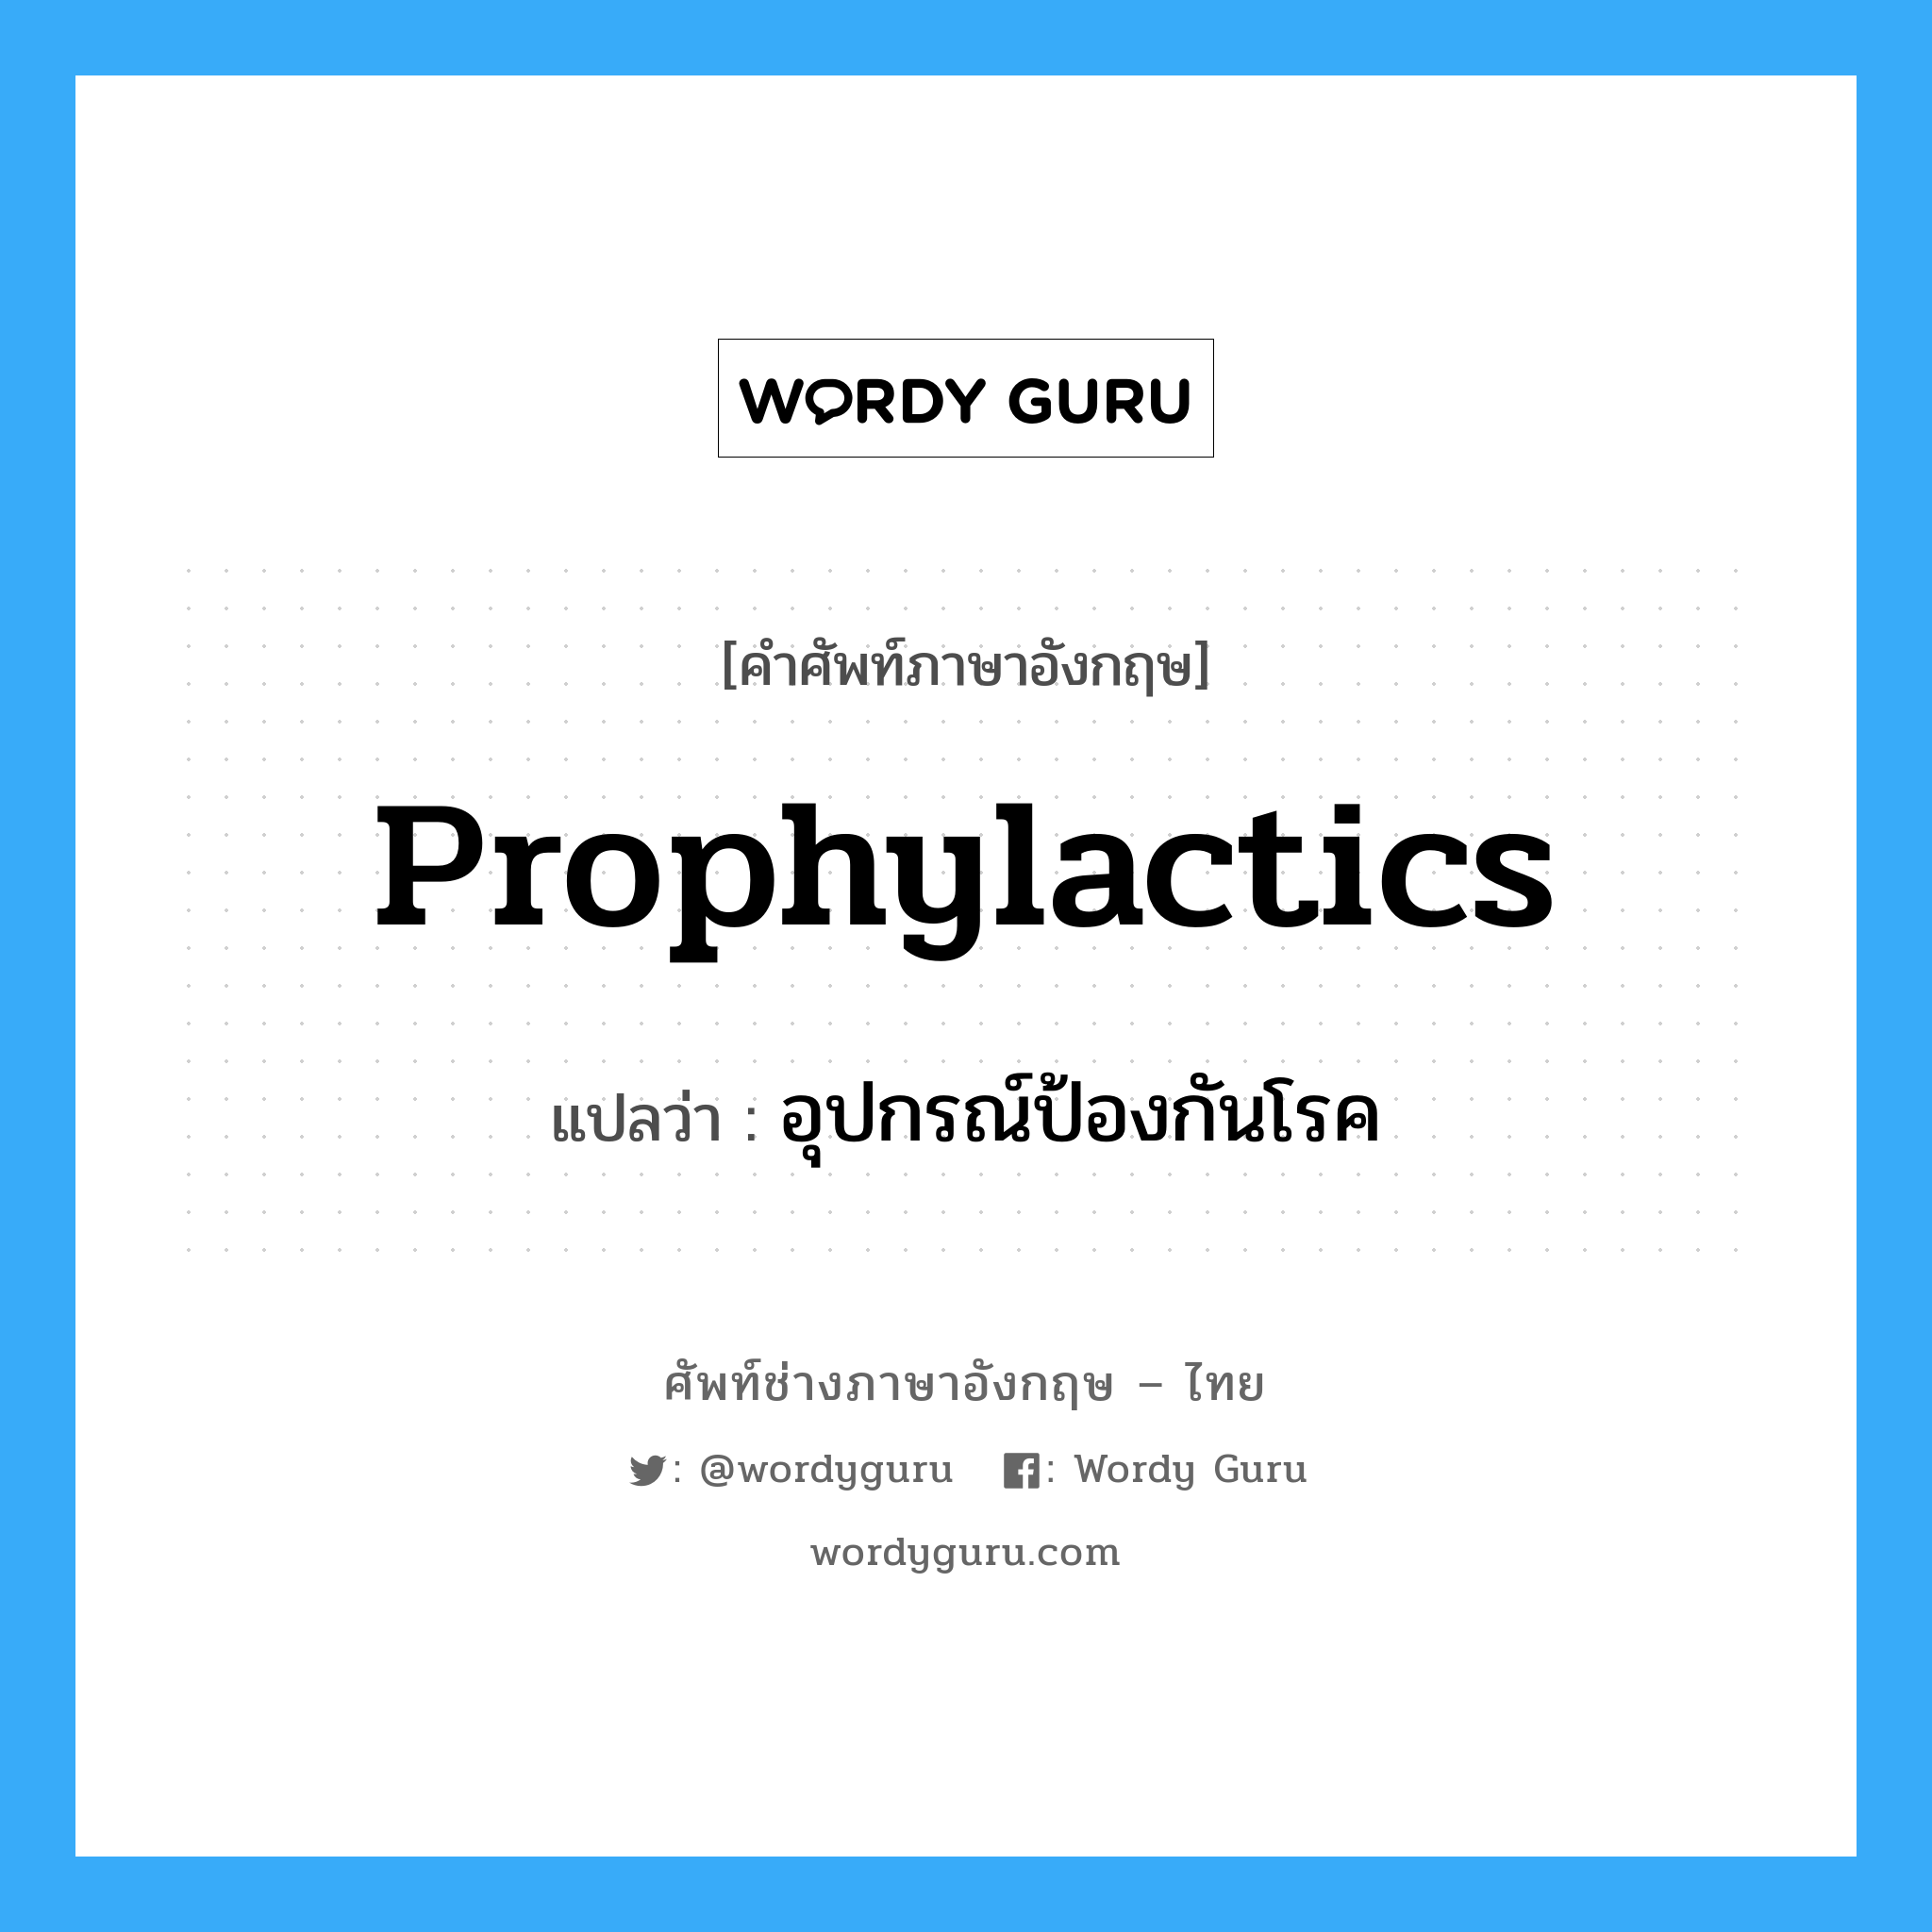 Prophylactics แปลว่า?, คำศัพท์ช่างภาษาอังกฤษ - ไทย Prophylactics คำศัพท์ภาษาอังกฤษ Prophylactics แปลว่า อุปกรณ์ป้องกันโรค